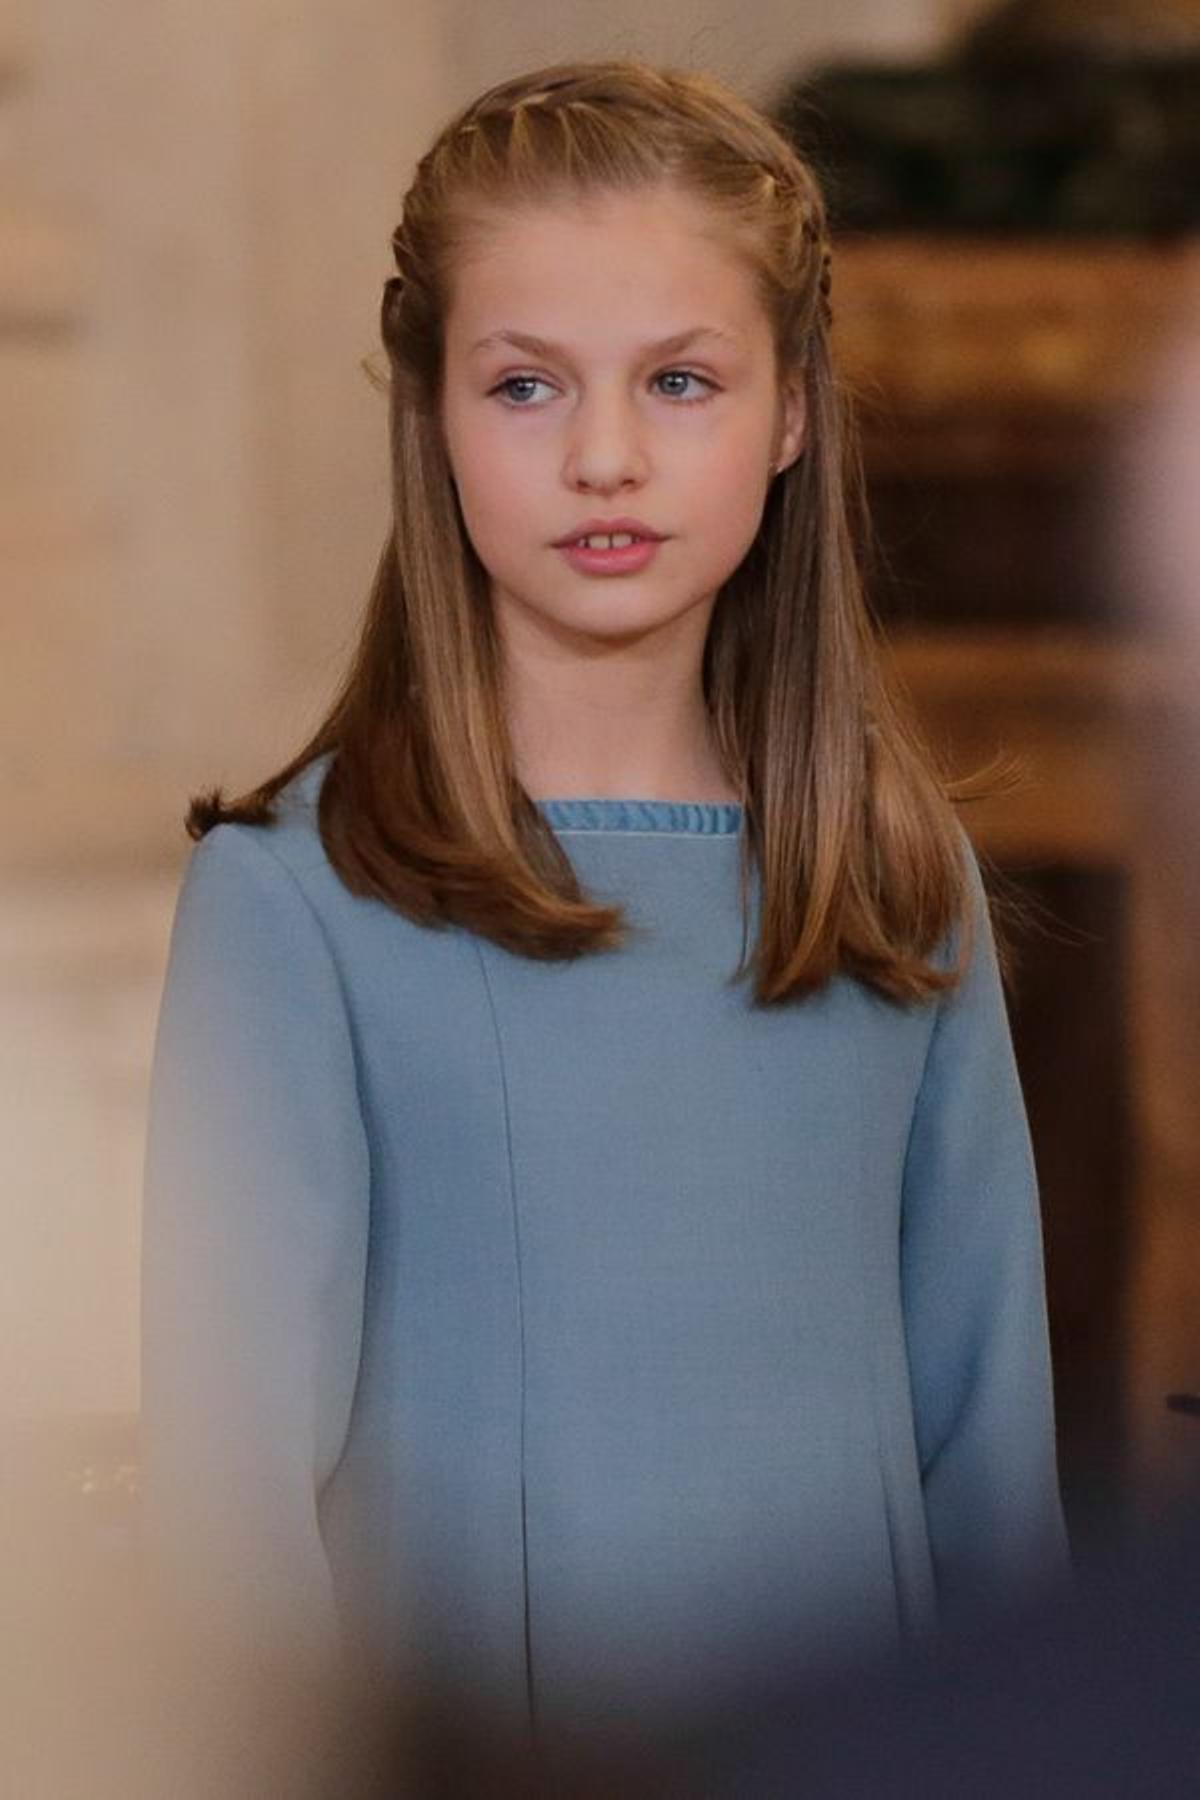 Detalle del look de la princesa Leonor en la ceremonia en la que ha recibido el Toisón de Oro